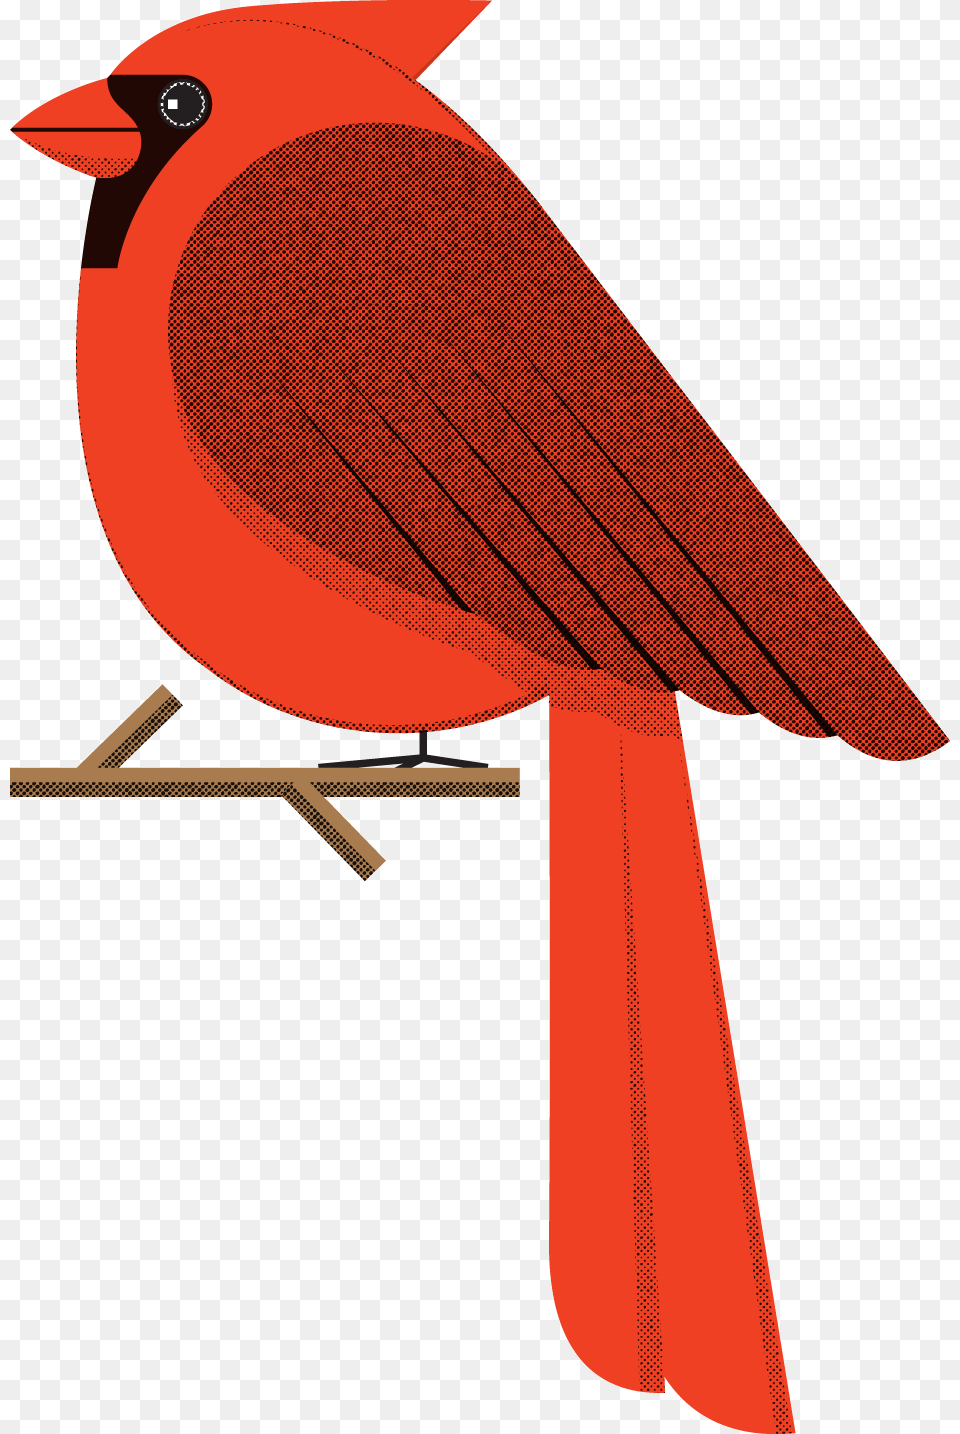 Halftone, Animal, Bird, Cardinal Free Transparent Png